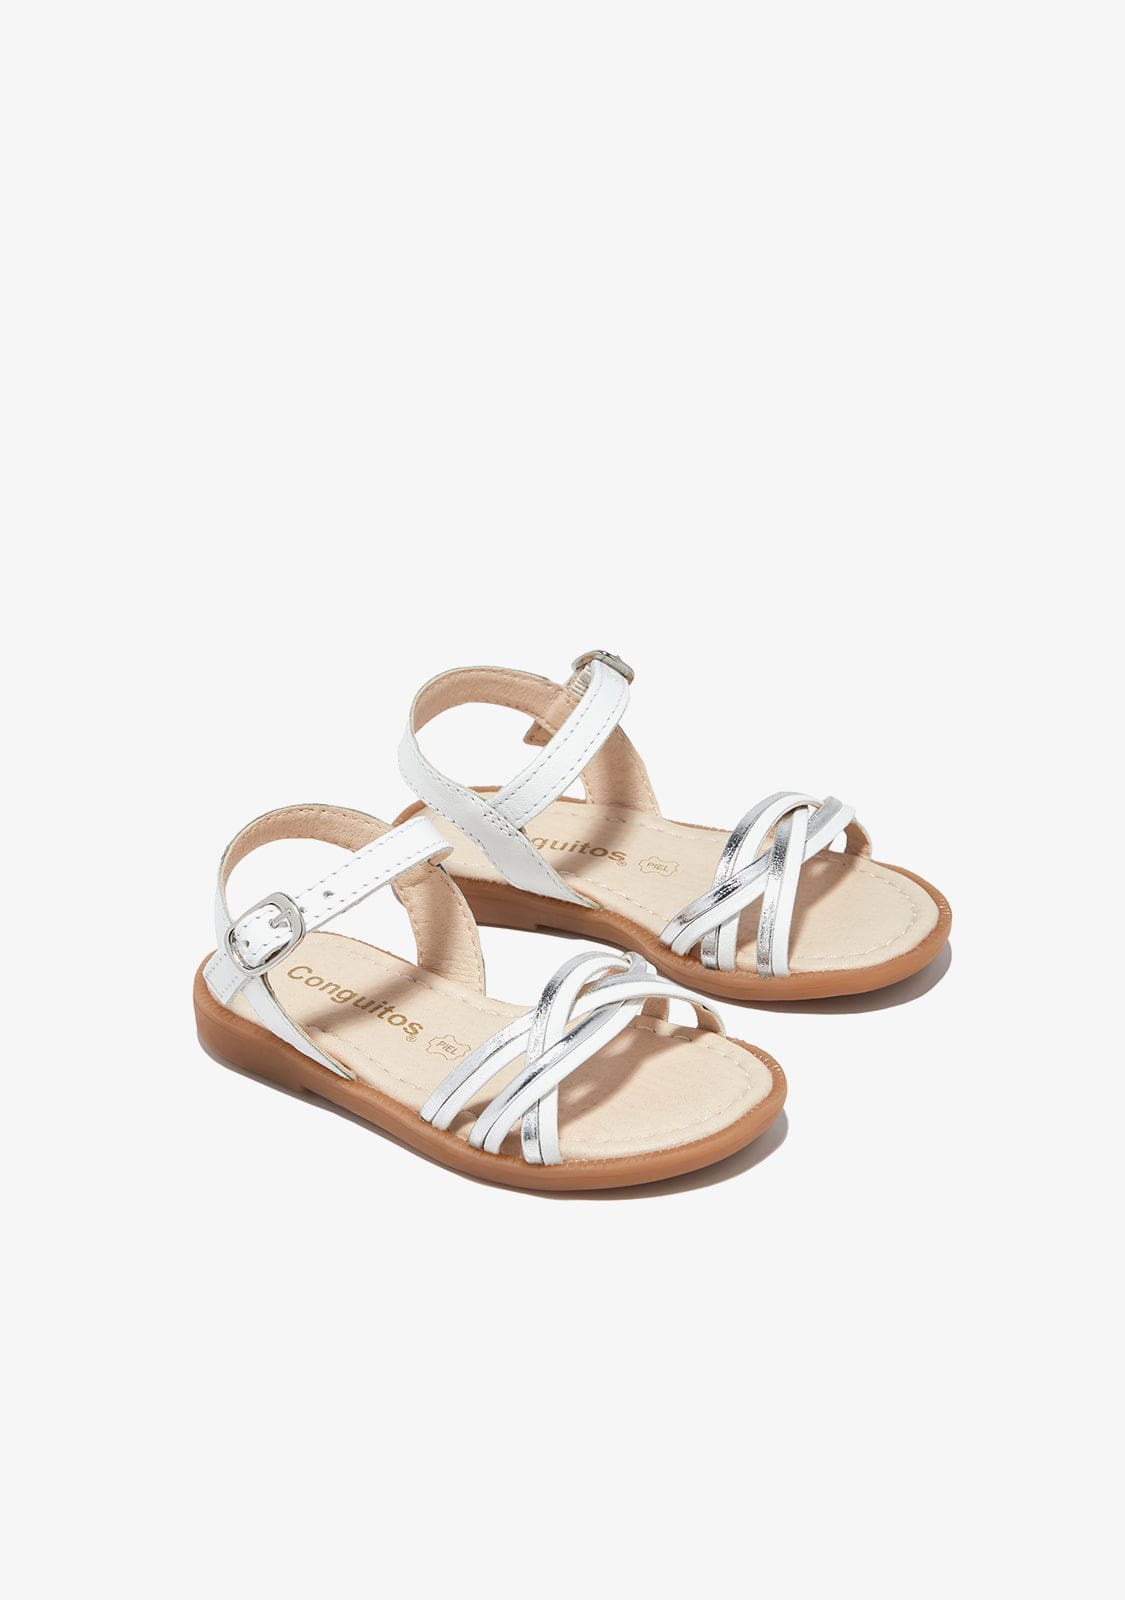 CONGUITOS TIRAS White Silver Buckle Sandals